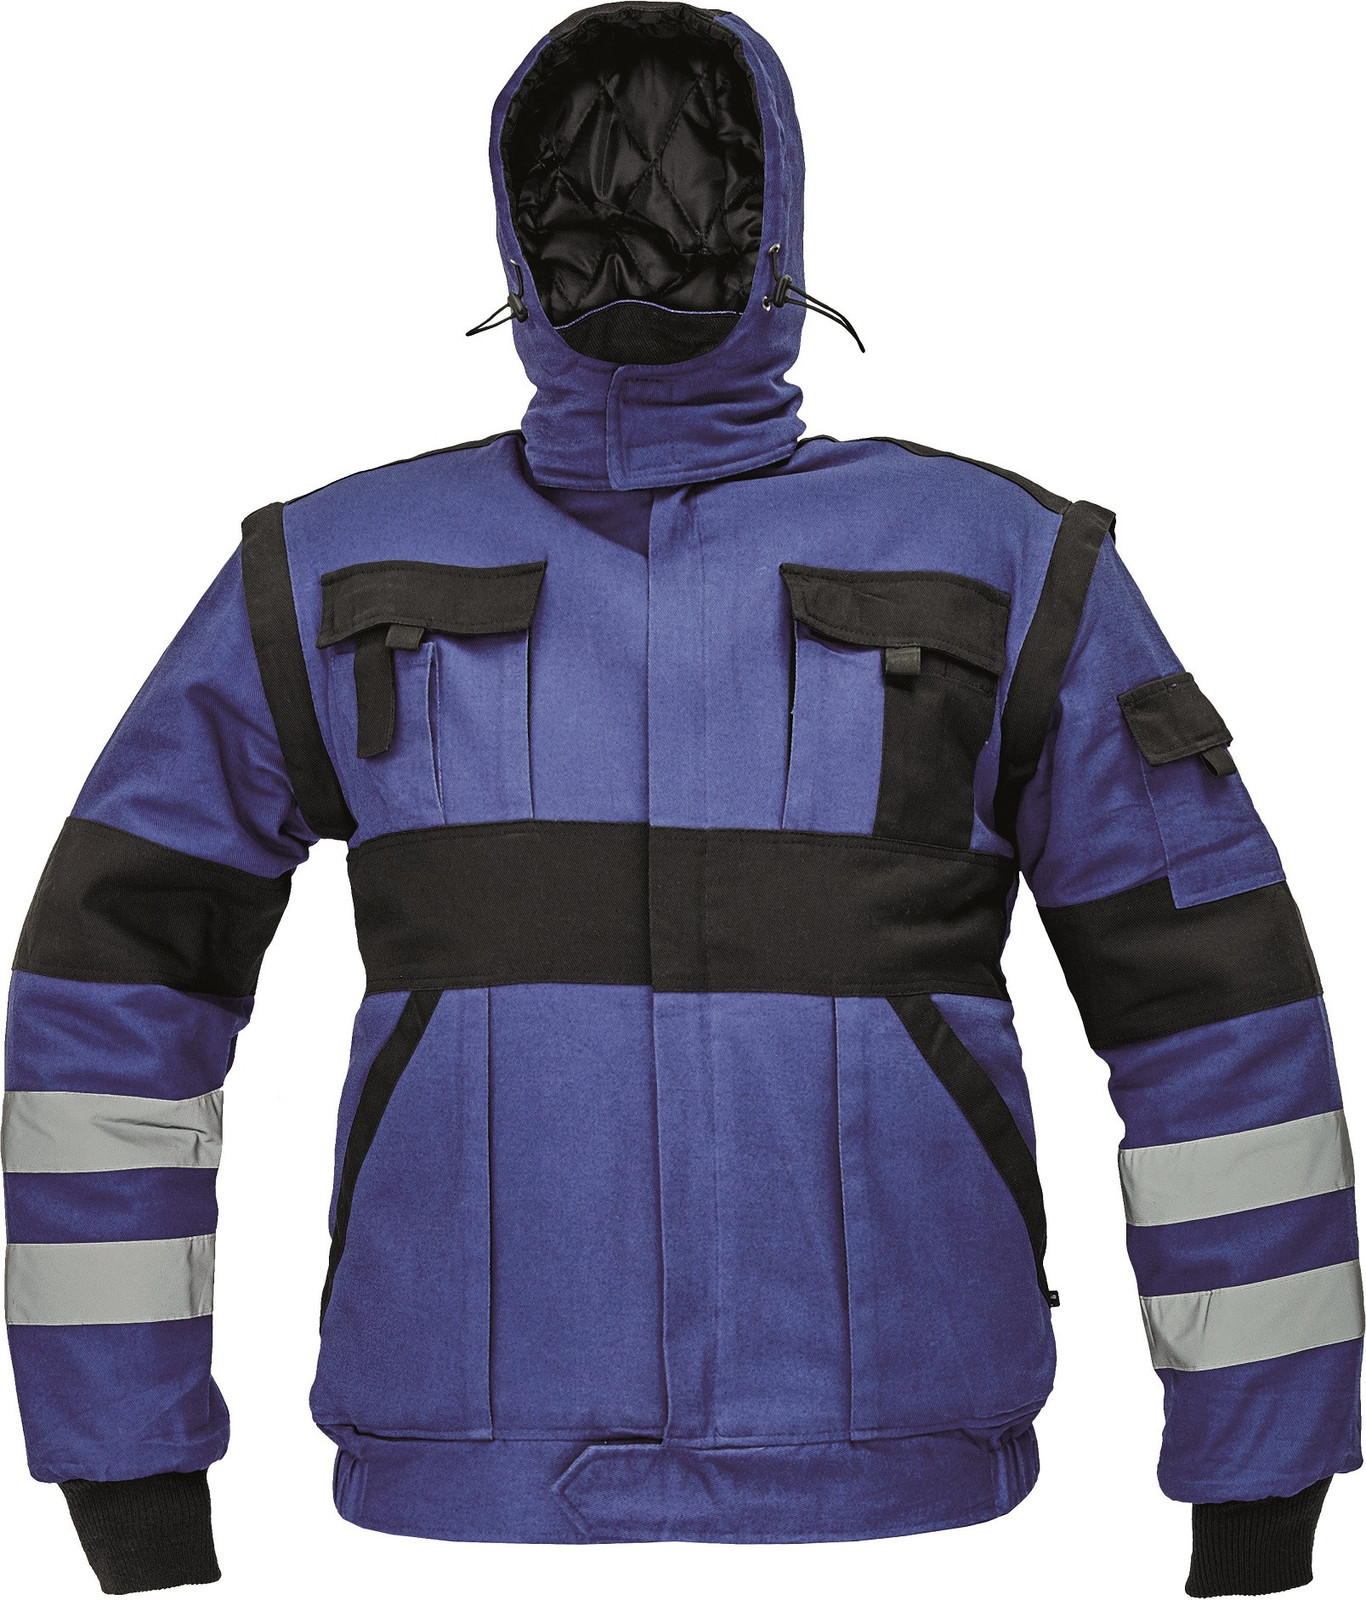 Zateplená montérková bunda Max Winter s reflexnými pruhmi 2v1 - veľkosť: 54, farba: modrá/čierna